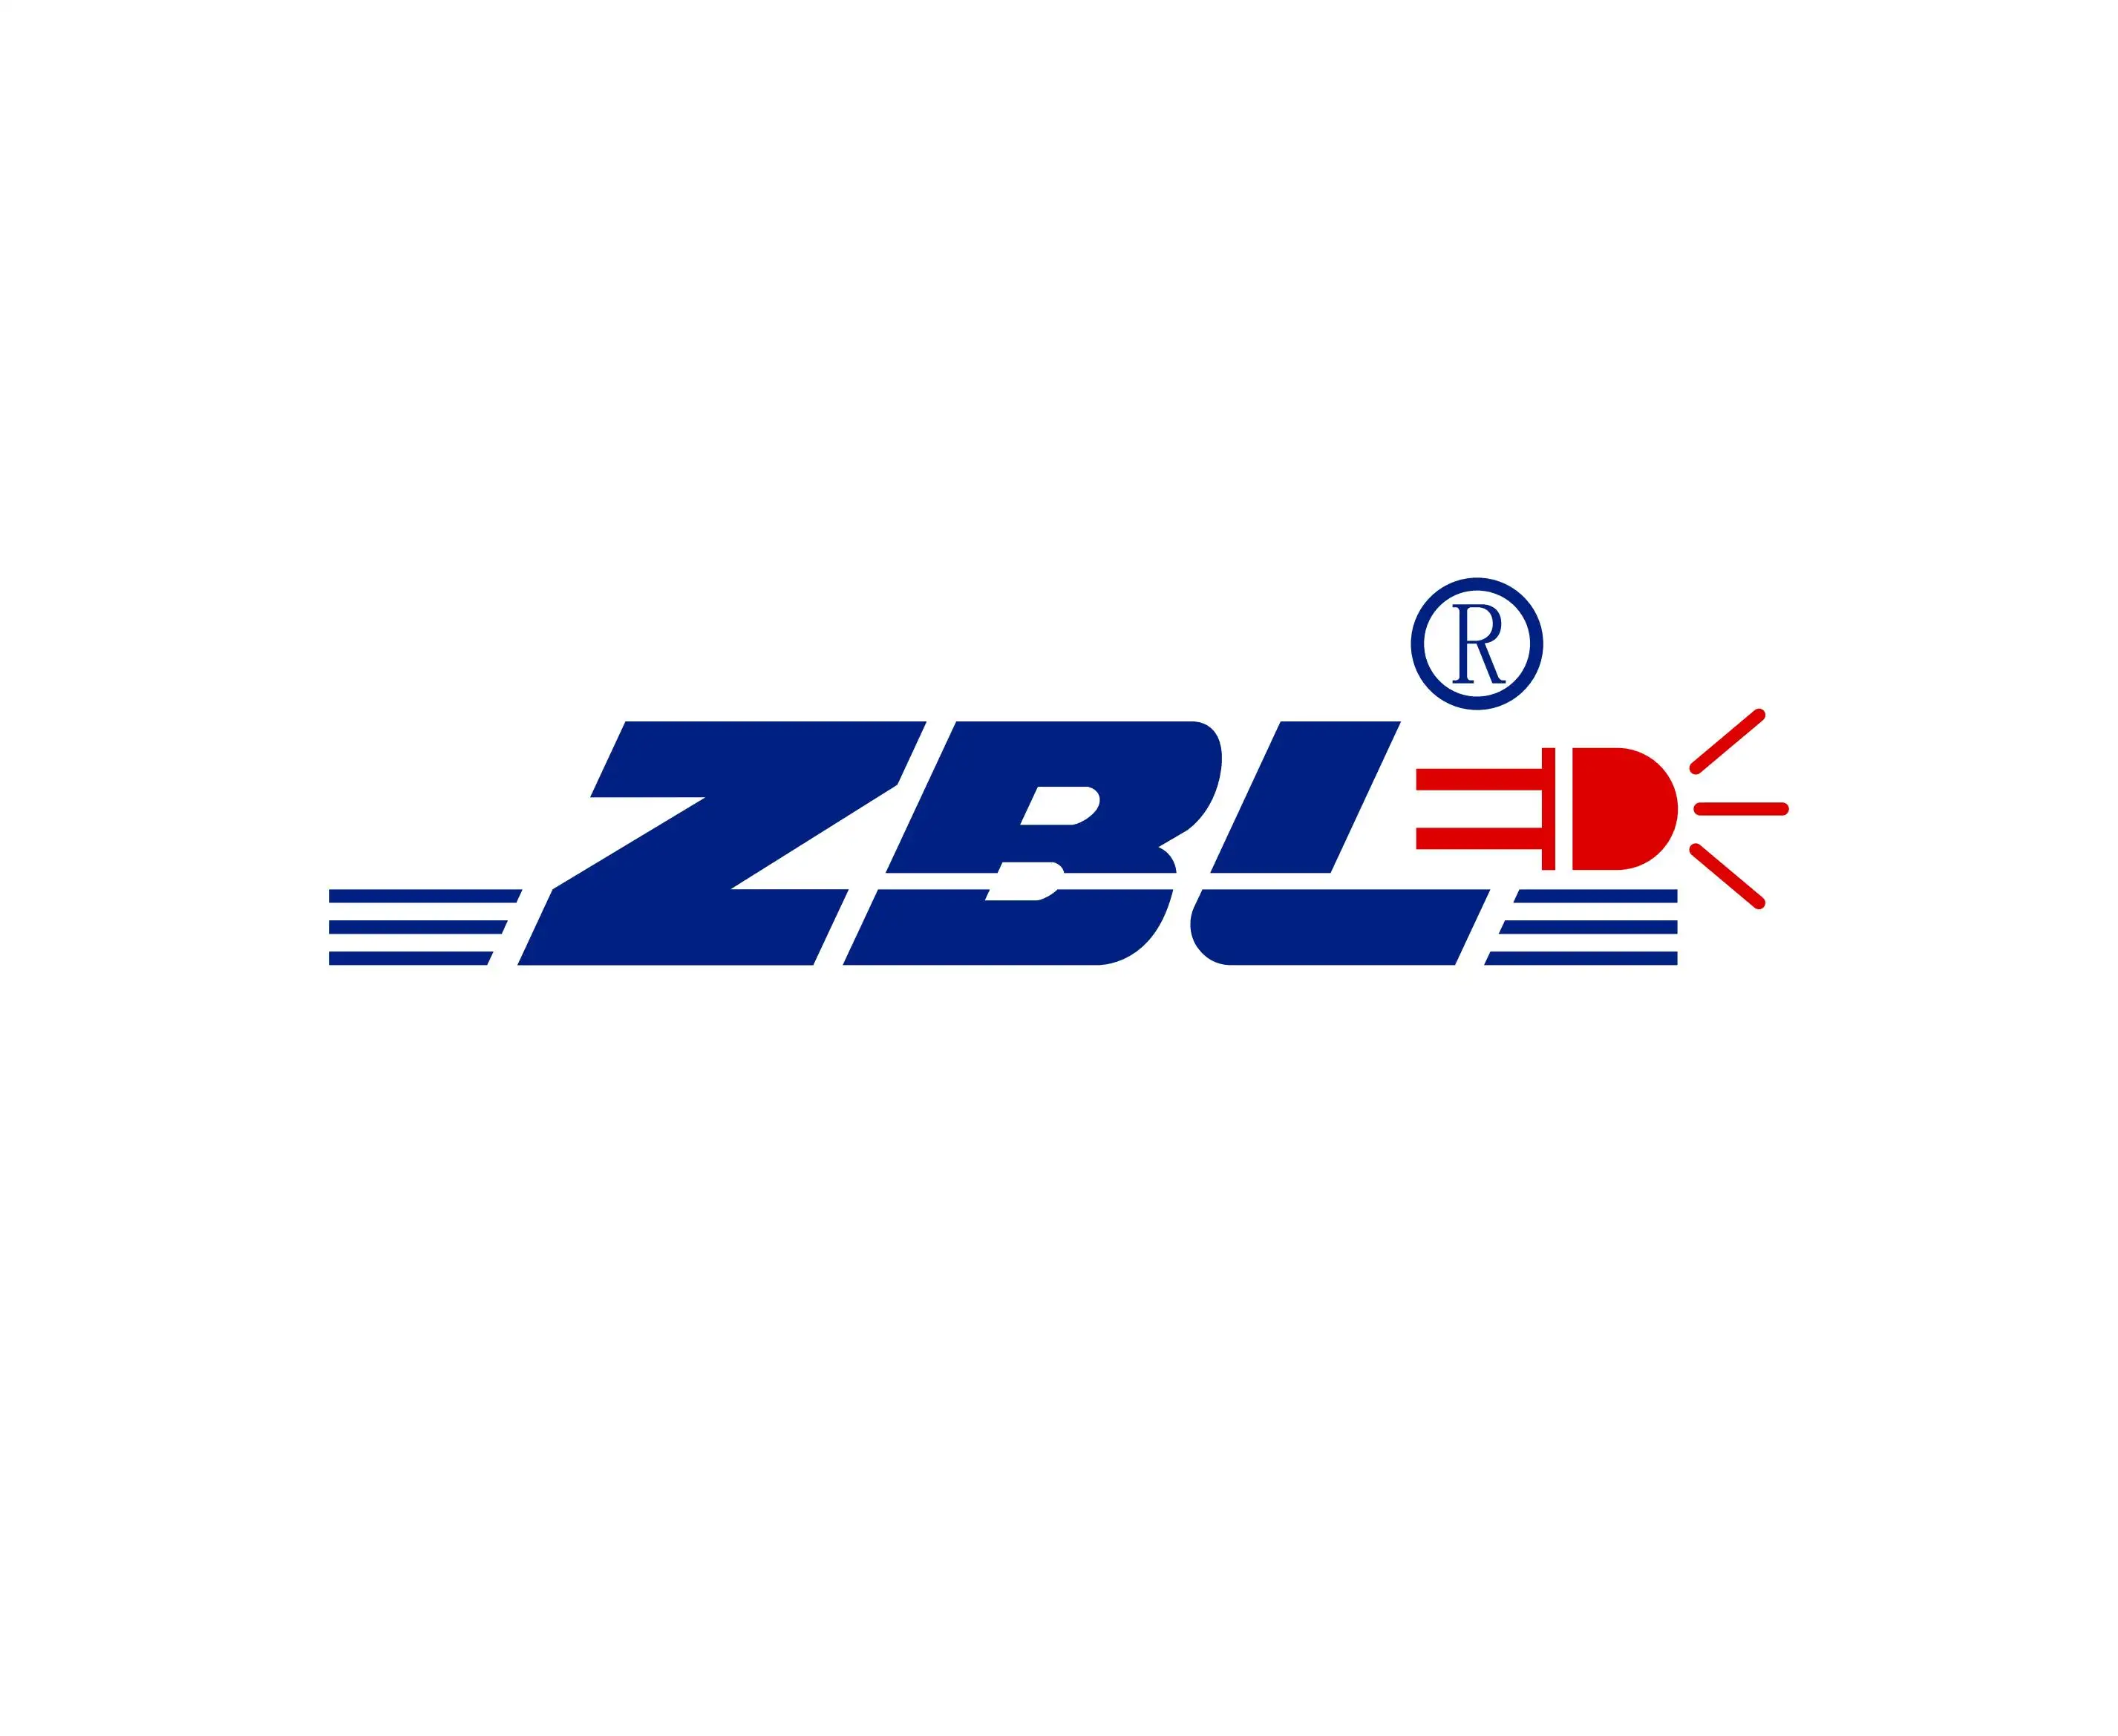 ZBL (SZ) Technology Company Limited